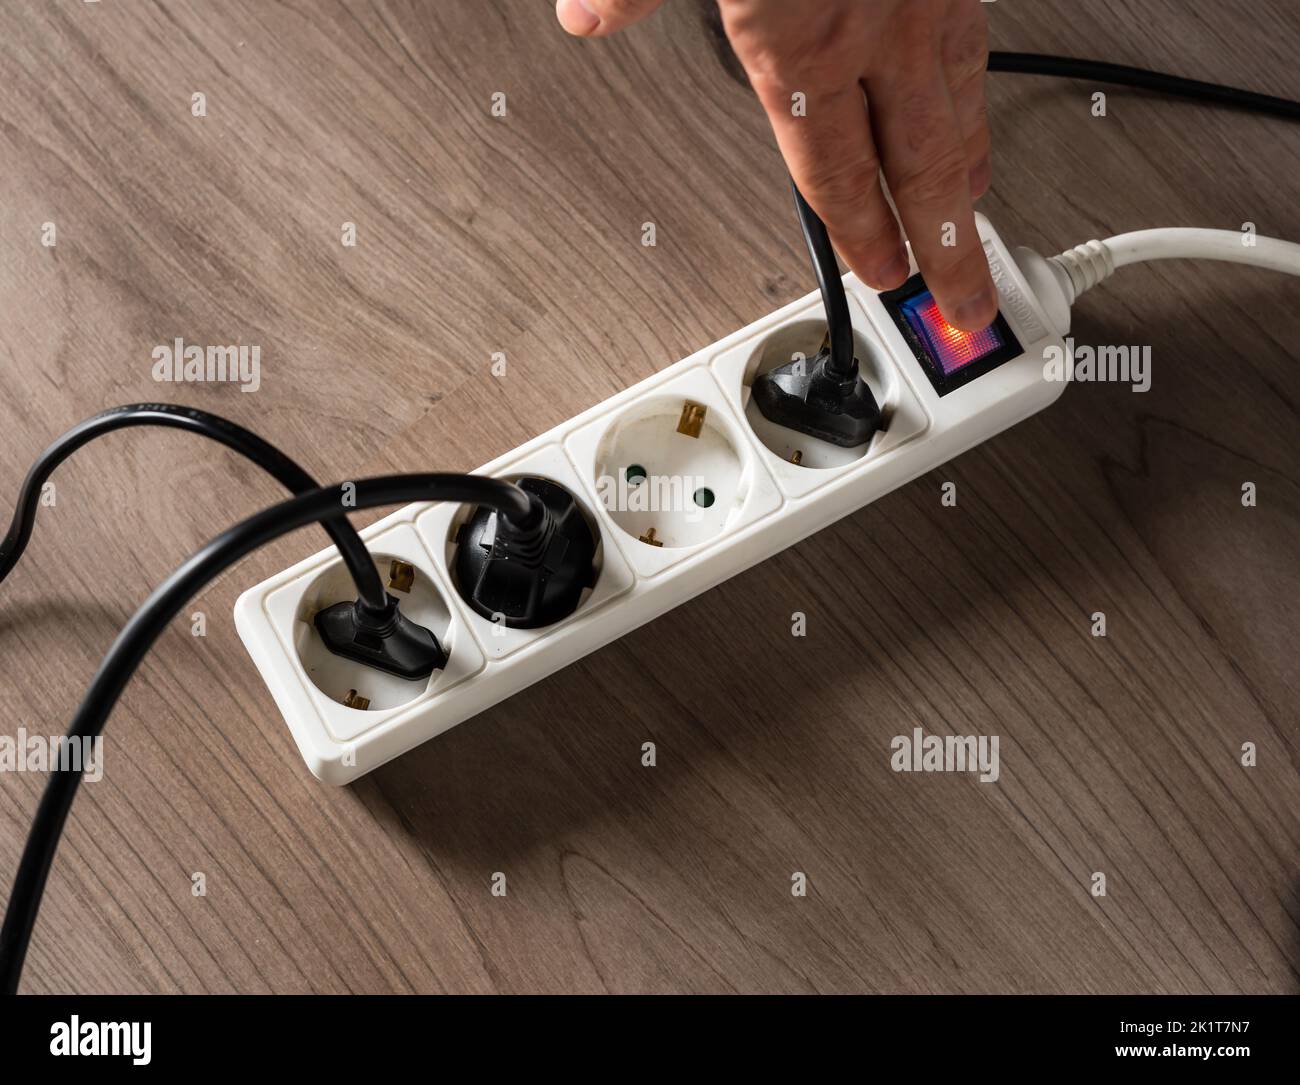 Ein Mann, der den elektrischen Strom abschaltet, indem er die Taste an einer weißen Steckdose abschaltet, um den Energieverbrauch zu senken Stockfoto